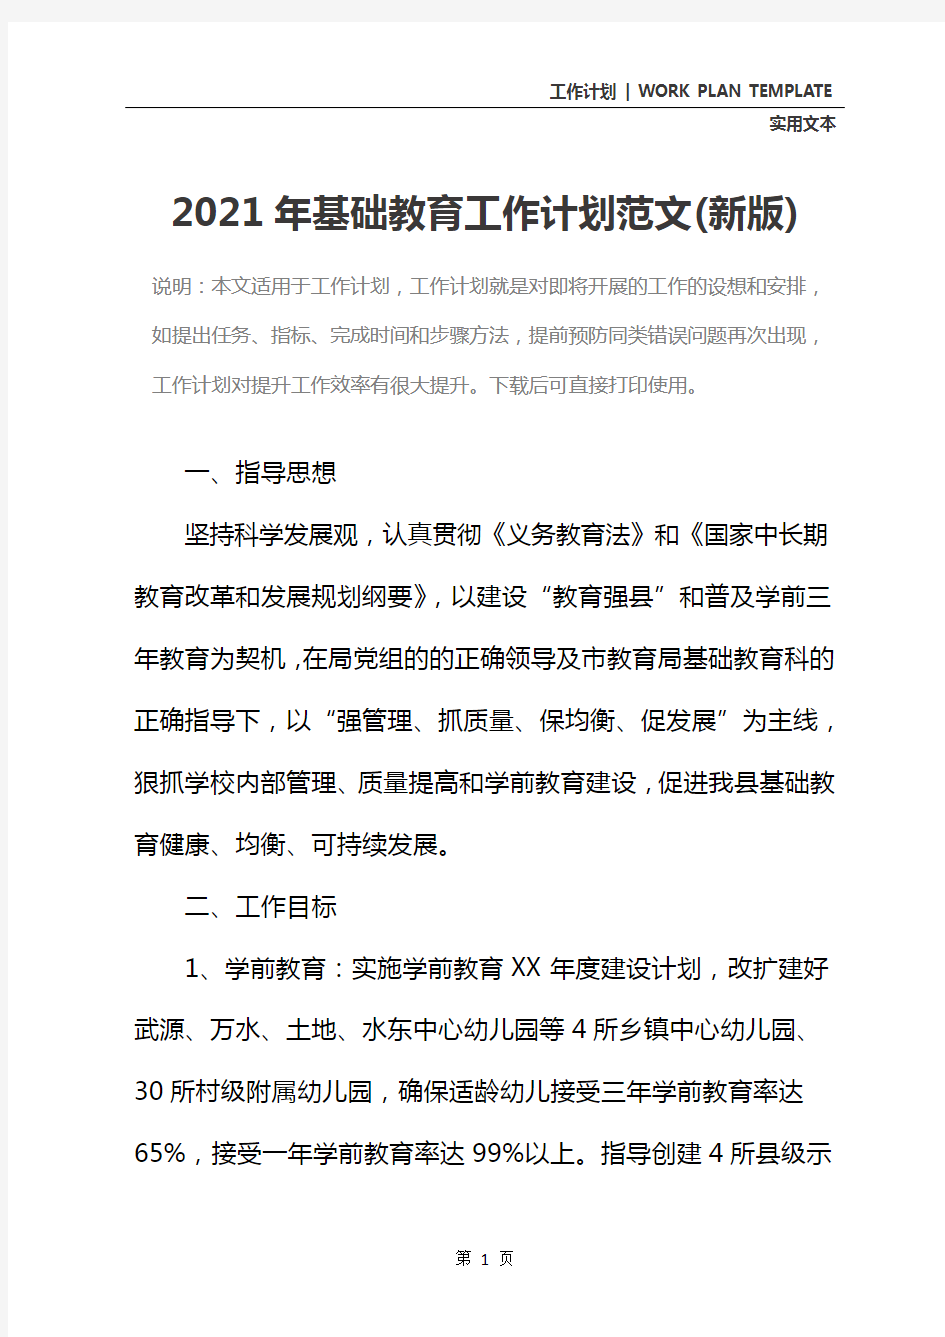 2021年基础教育工作计划范文(新版)